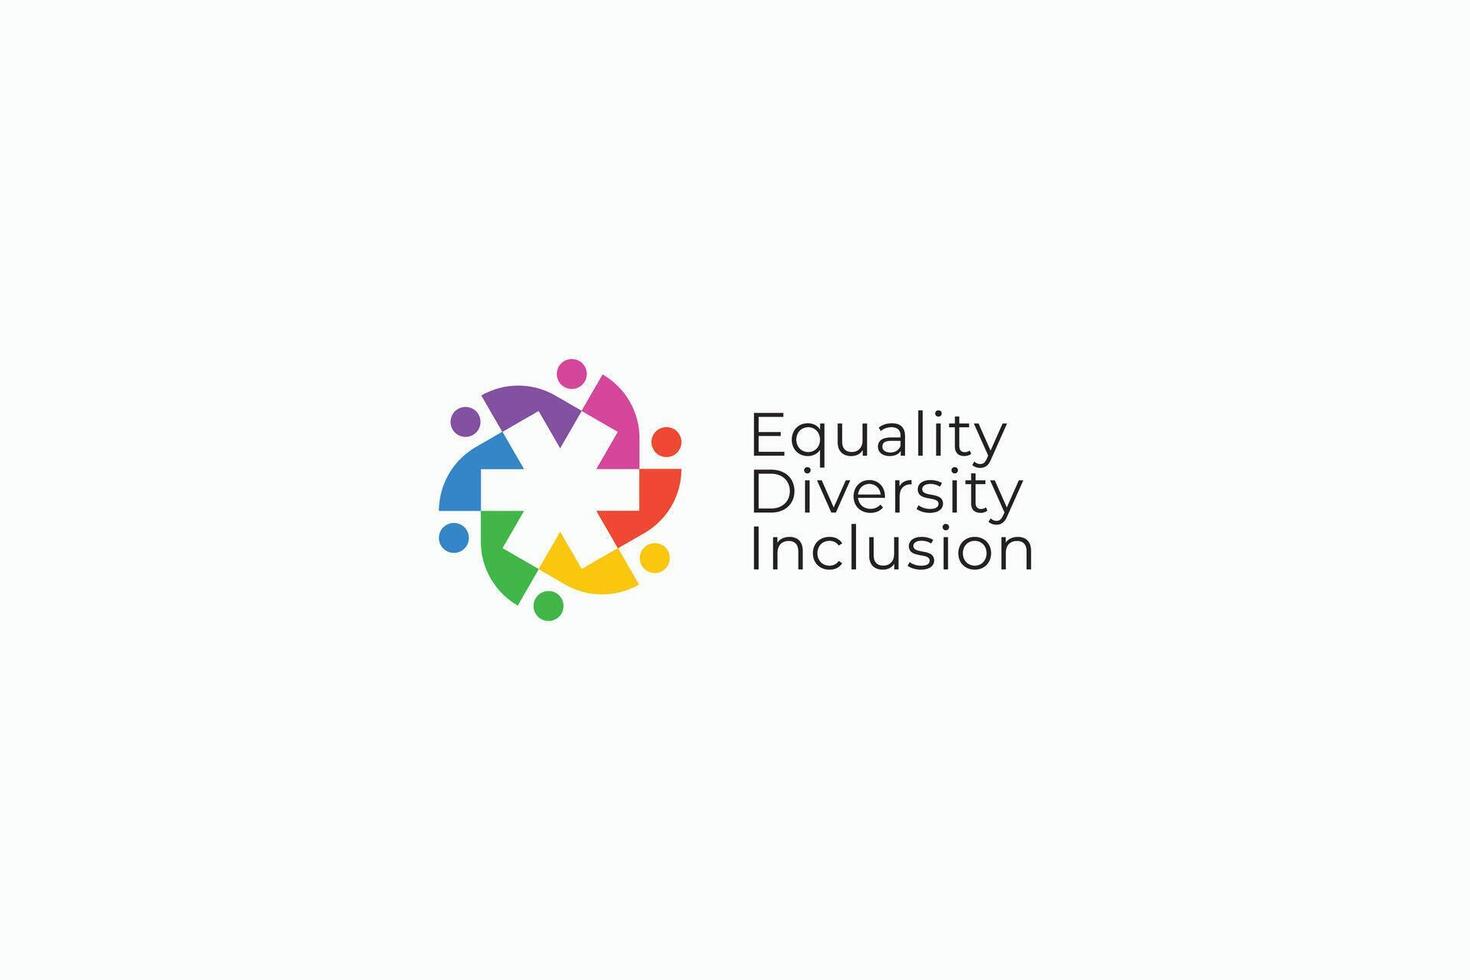 uguaglianza diversità inclusione problema umano diritti gruppo Comunità sociale rispetto cartello simbolo logo vettore